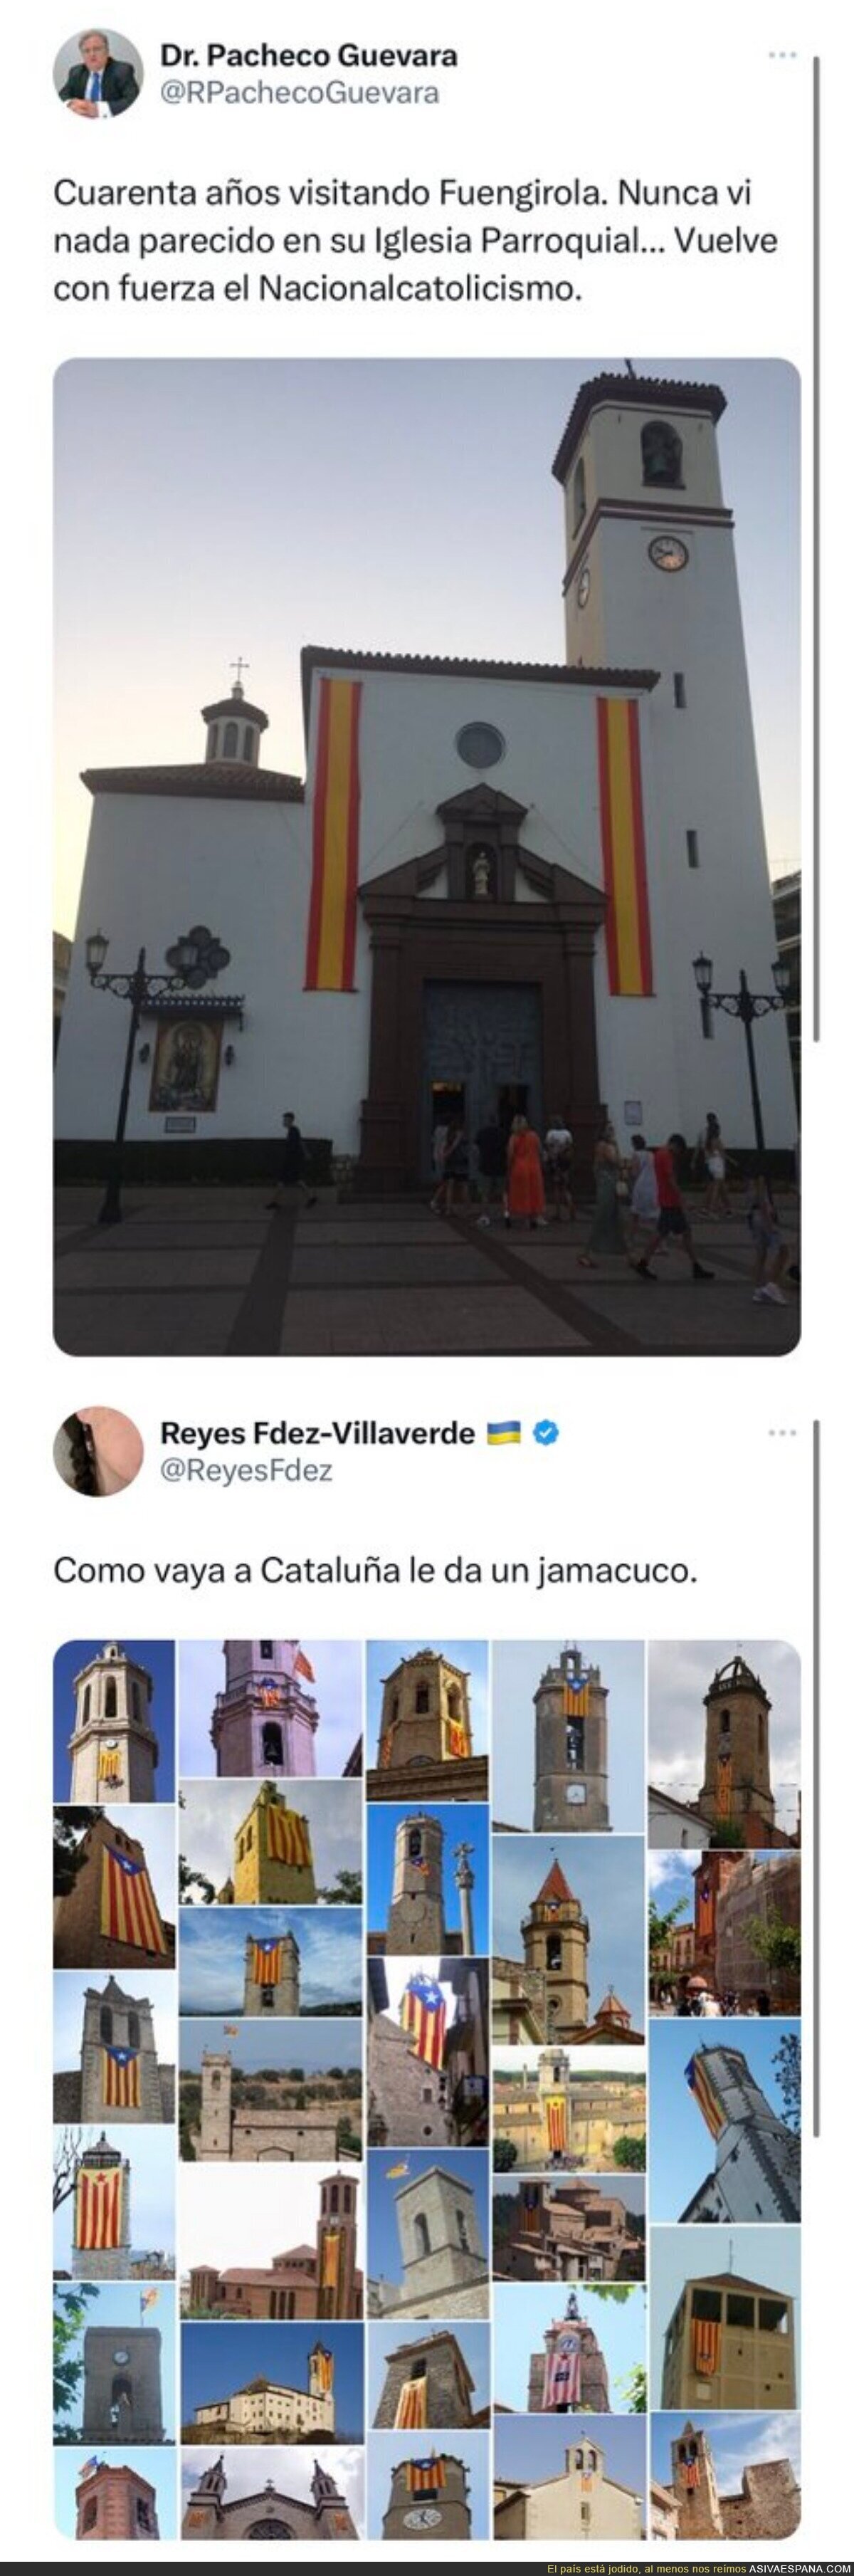 Lo que gusta en Catalunya lo de poner esteladas en sitios religiosos